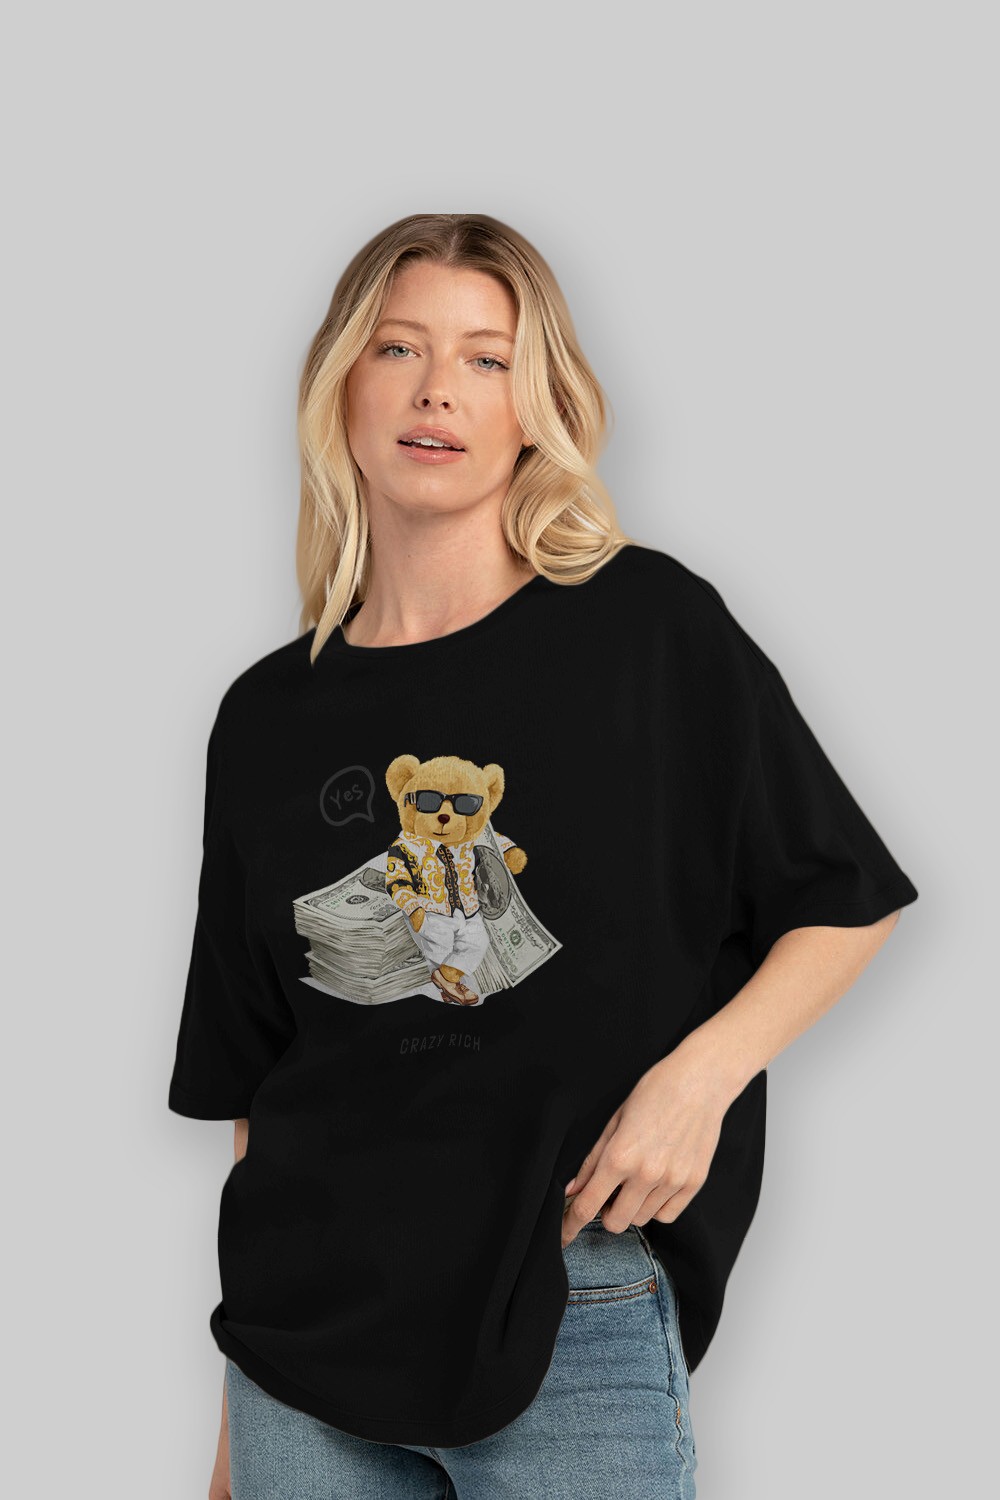 Teddy Bear Crazy Rich Ön Baskılı Oversize t-shirt Erkek Kadın Unisex %100 Pamuk